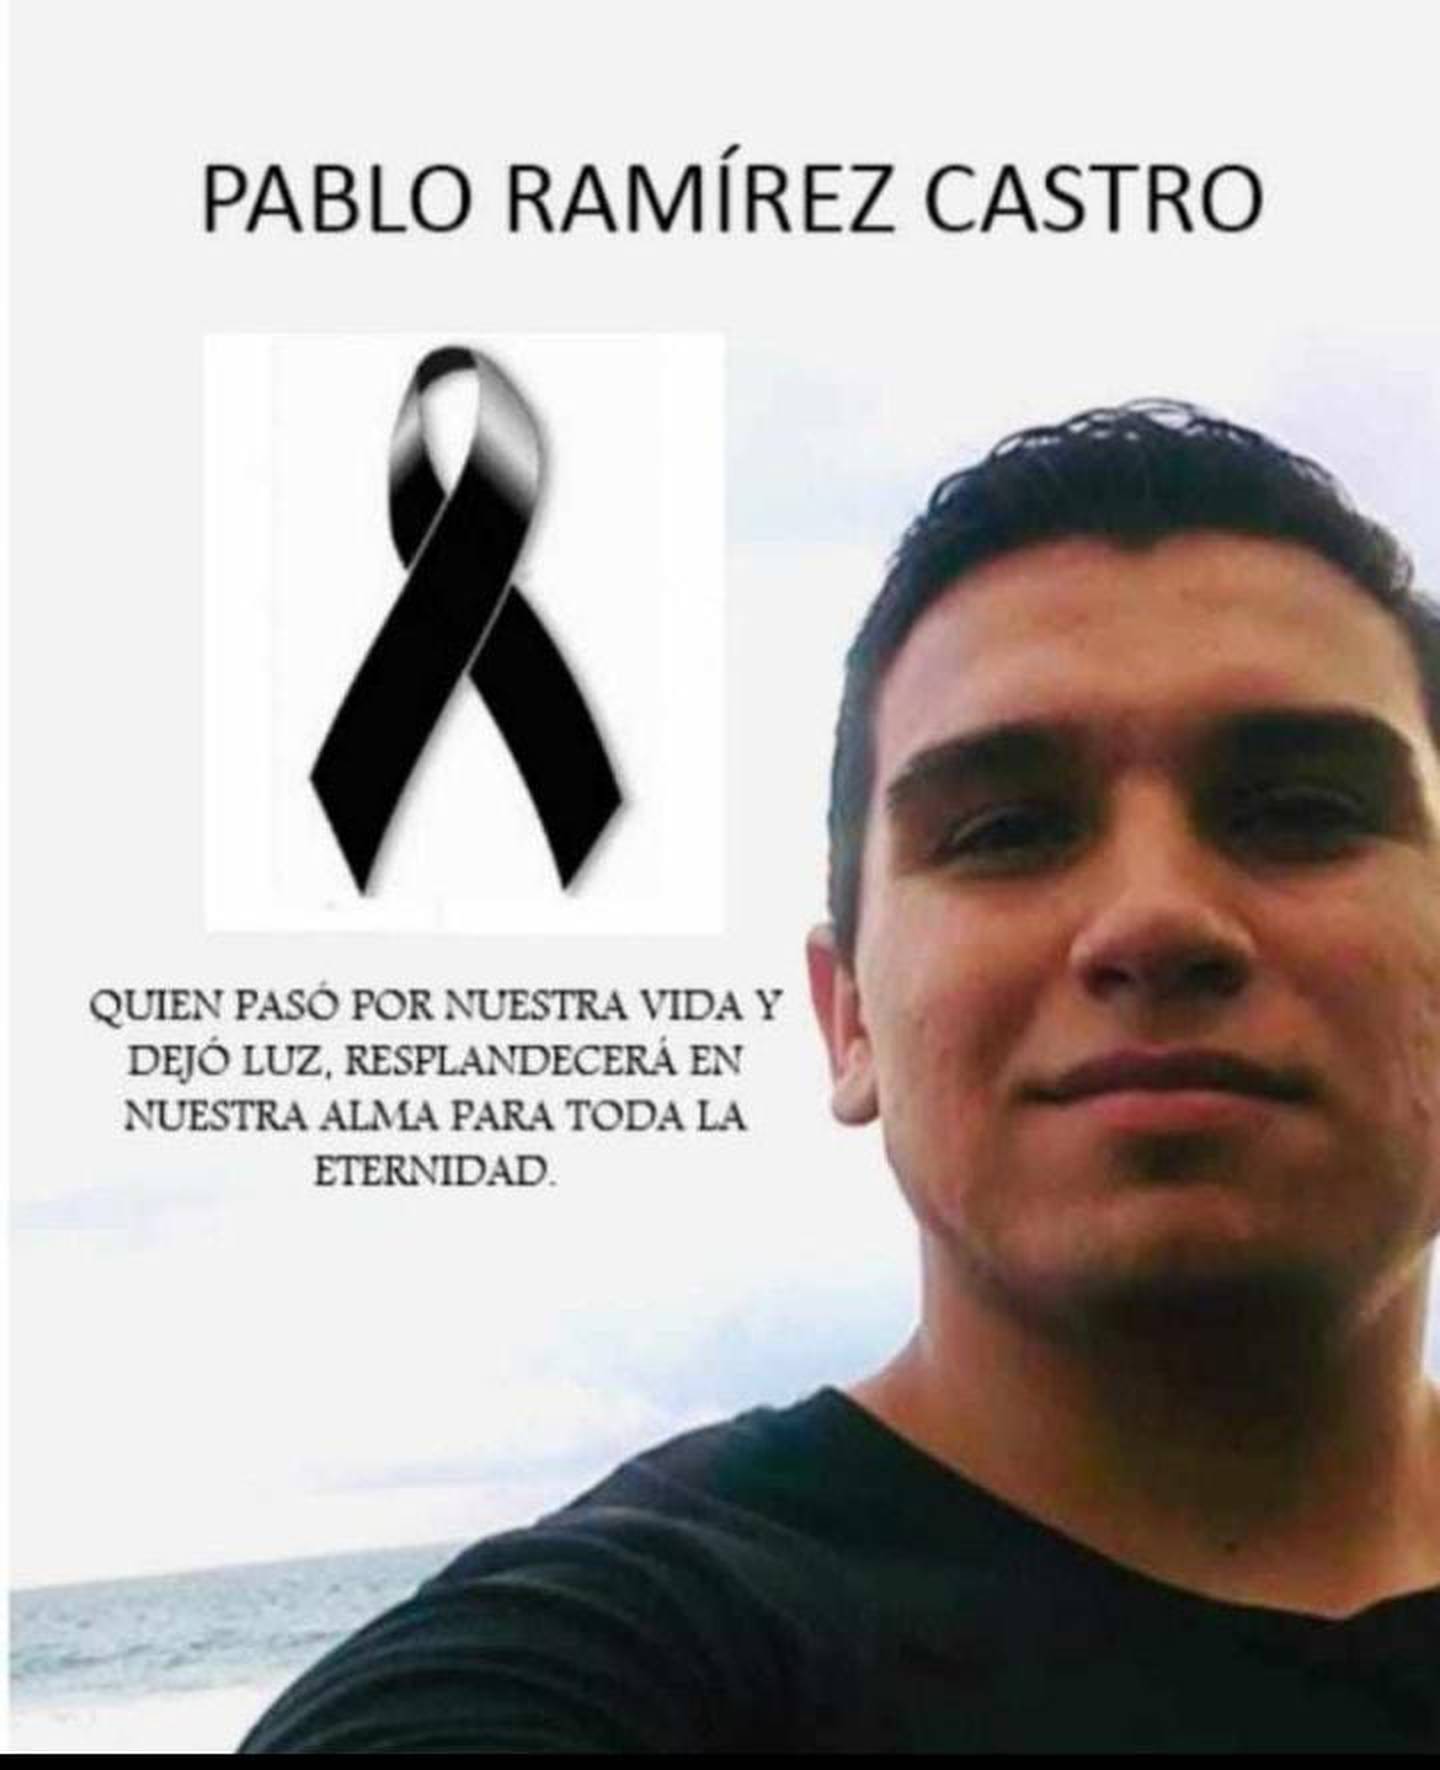 Pablo Ramírez Castro, joven asesinado de seis puñaladas en San Ramón, Alajuela. Foto tomada de FAcebook.